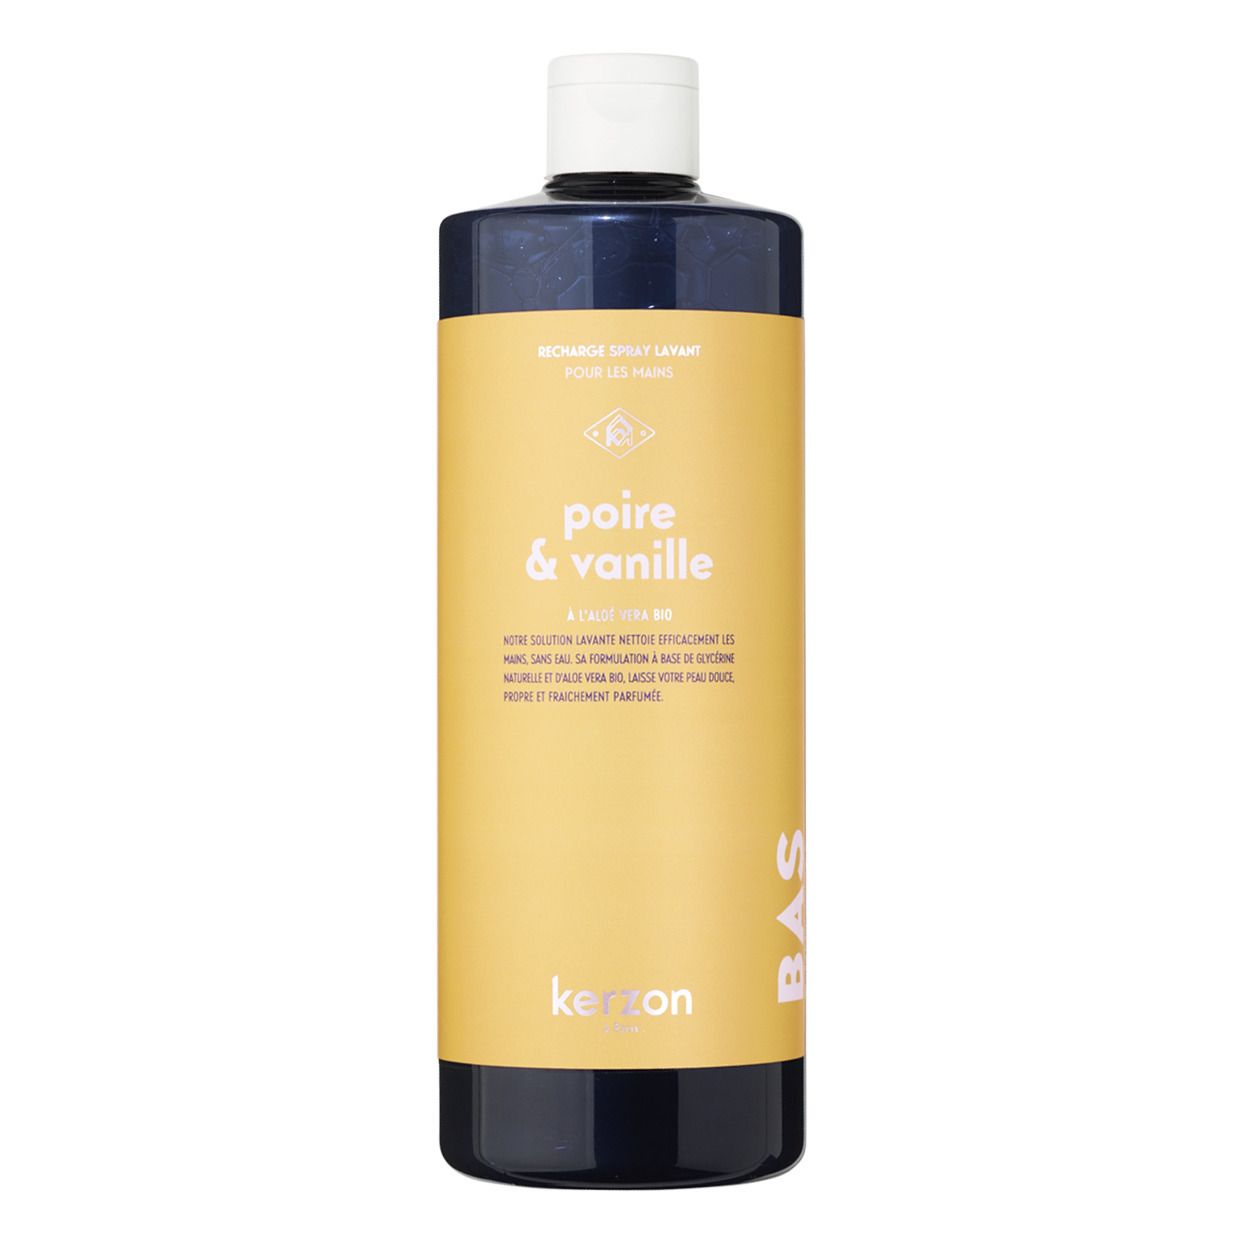 Kerzon - Recharge spray lavant poire & vanille - 500ml - Jaune